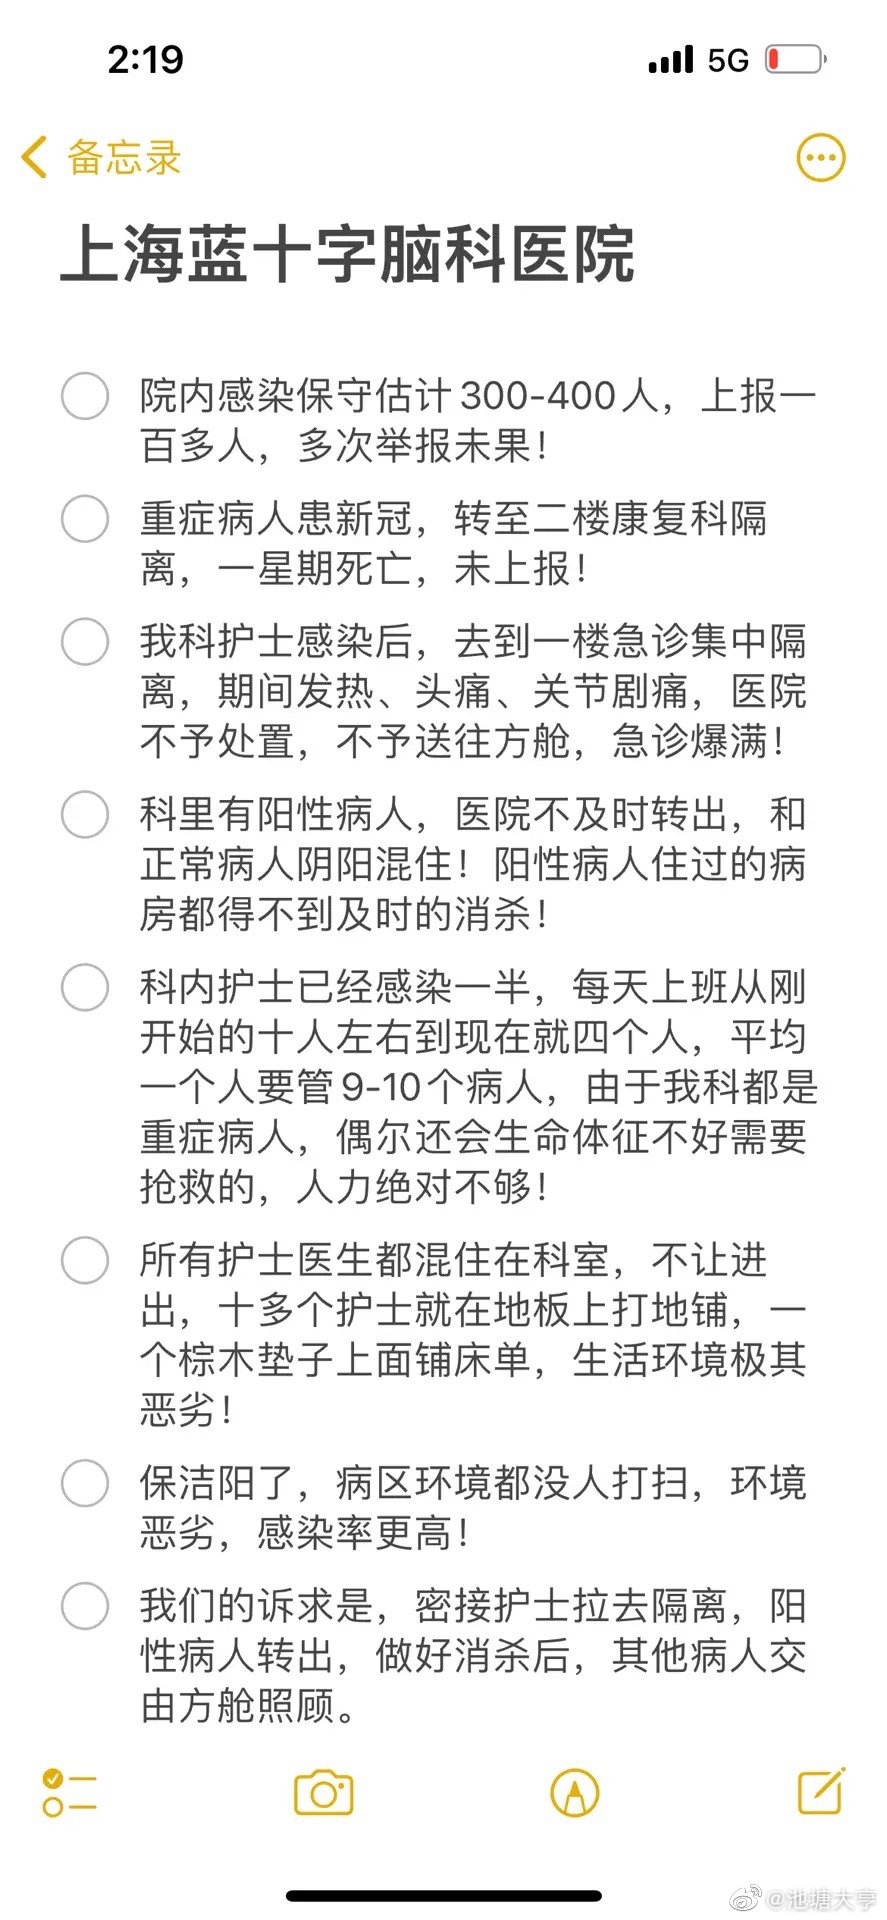 上海藍十字腦科醫院醫護人員與領導對話截圖二（微博圖片）